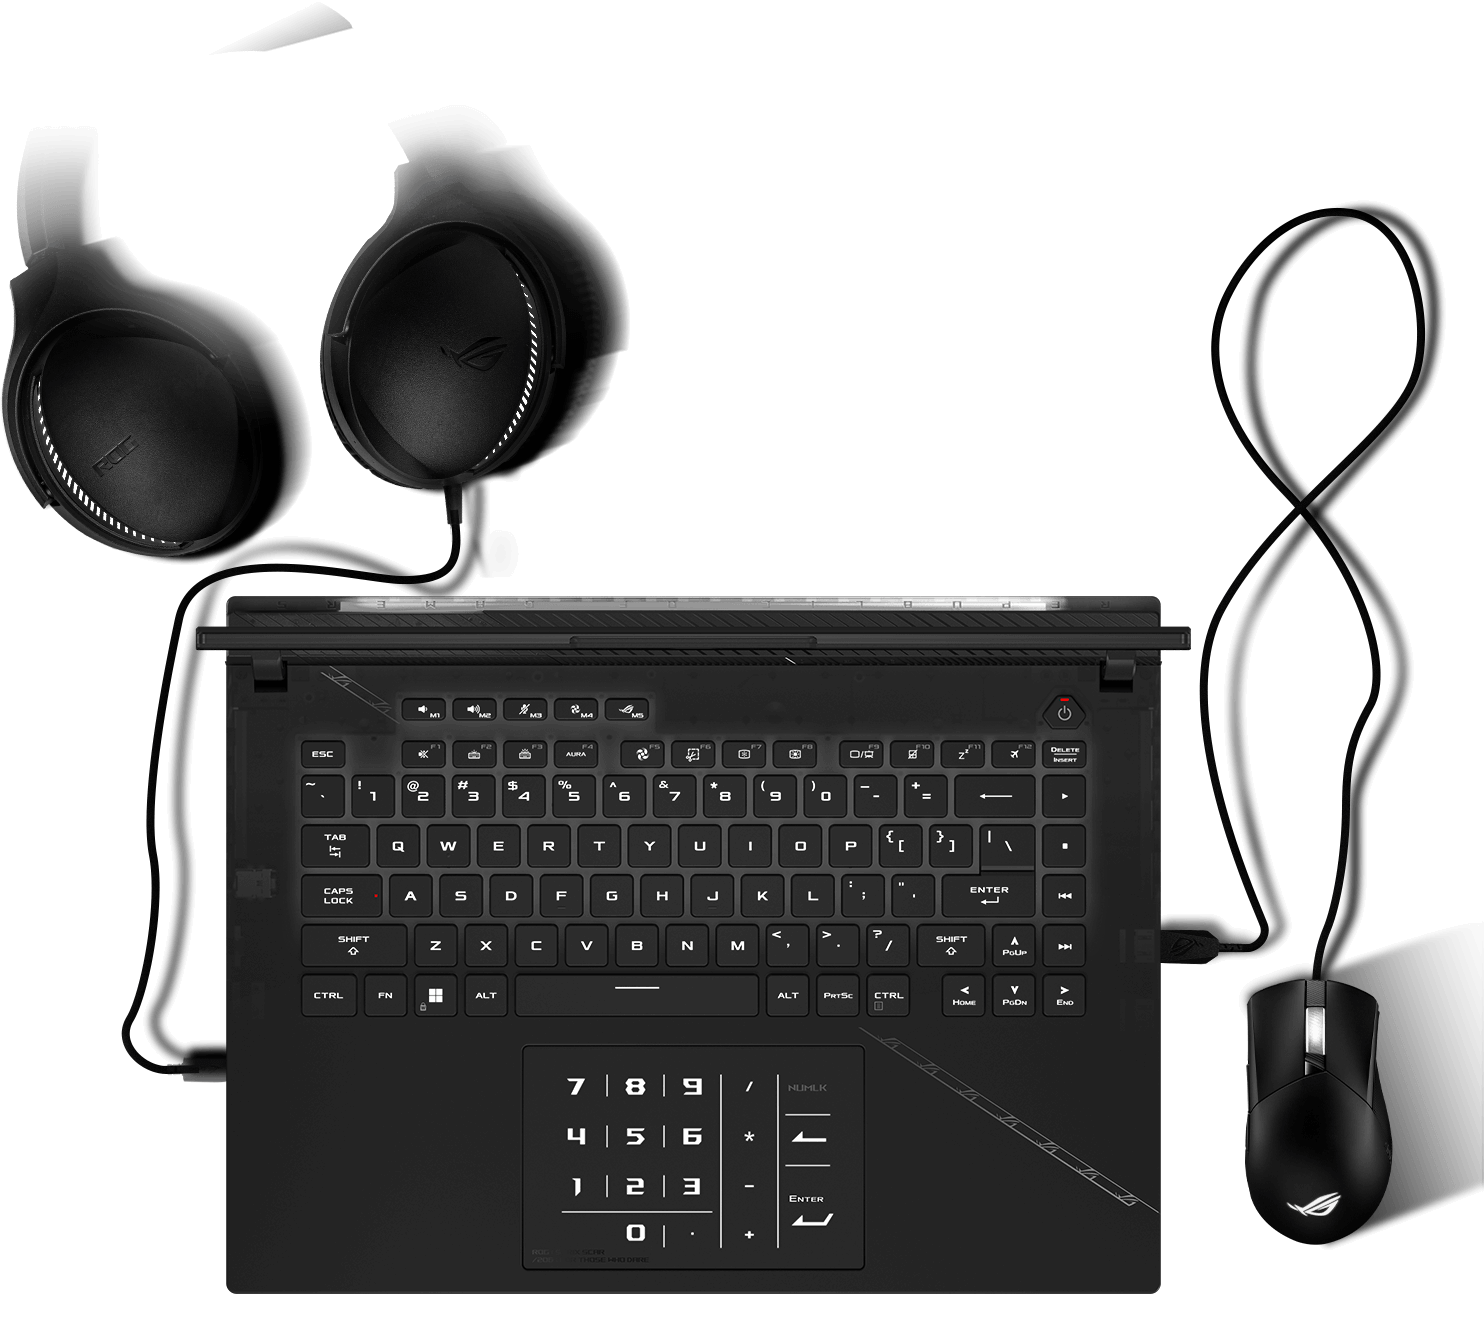 Pohled na klávesnici se světelnými Aura efekty synchronizovanými s myší a headsetem.